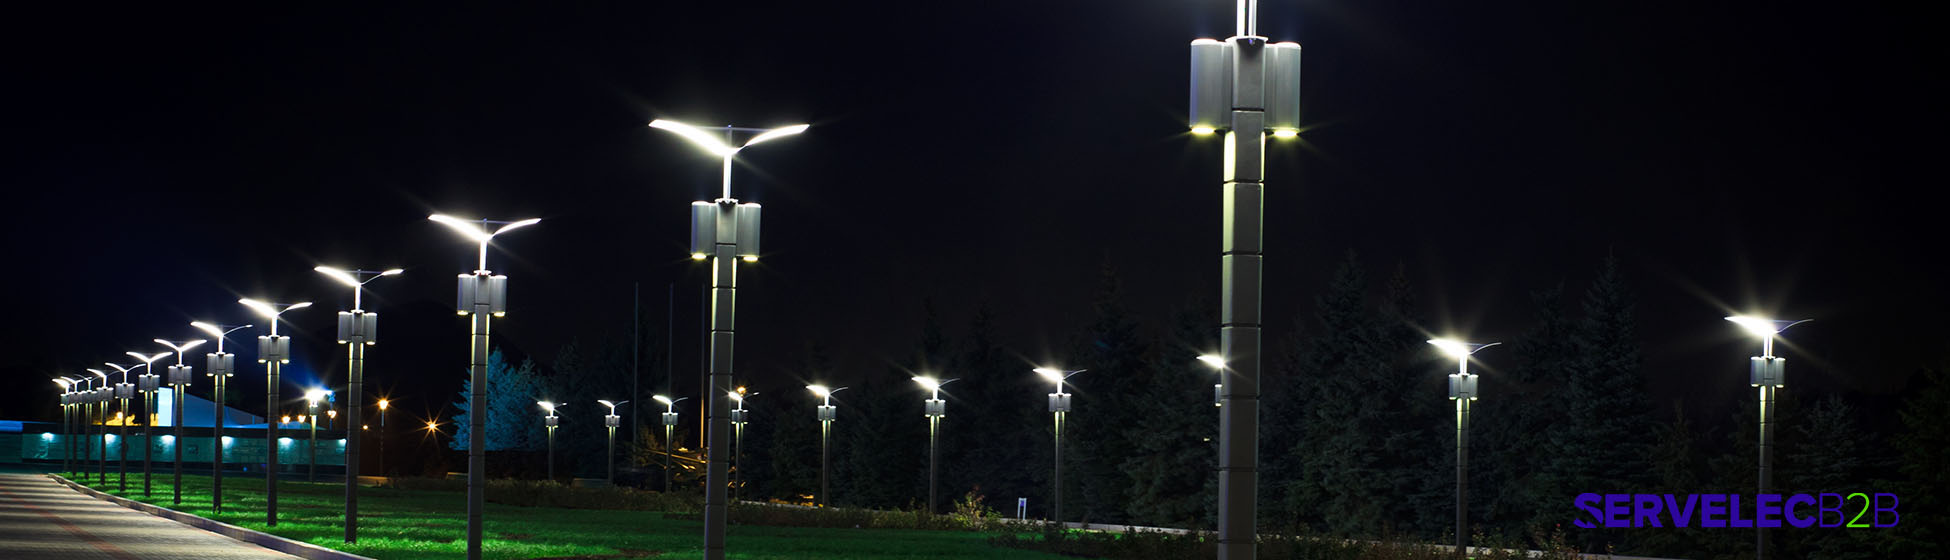 Eclairage public solaire led exterieur